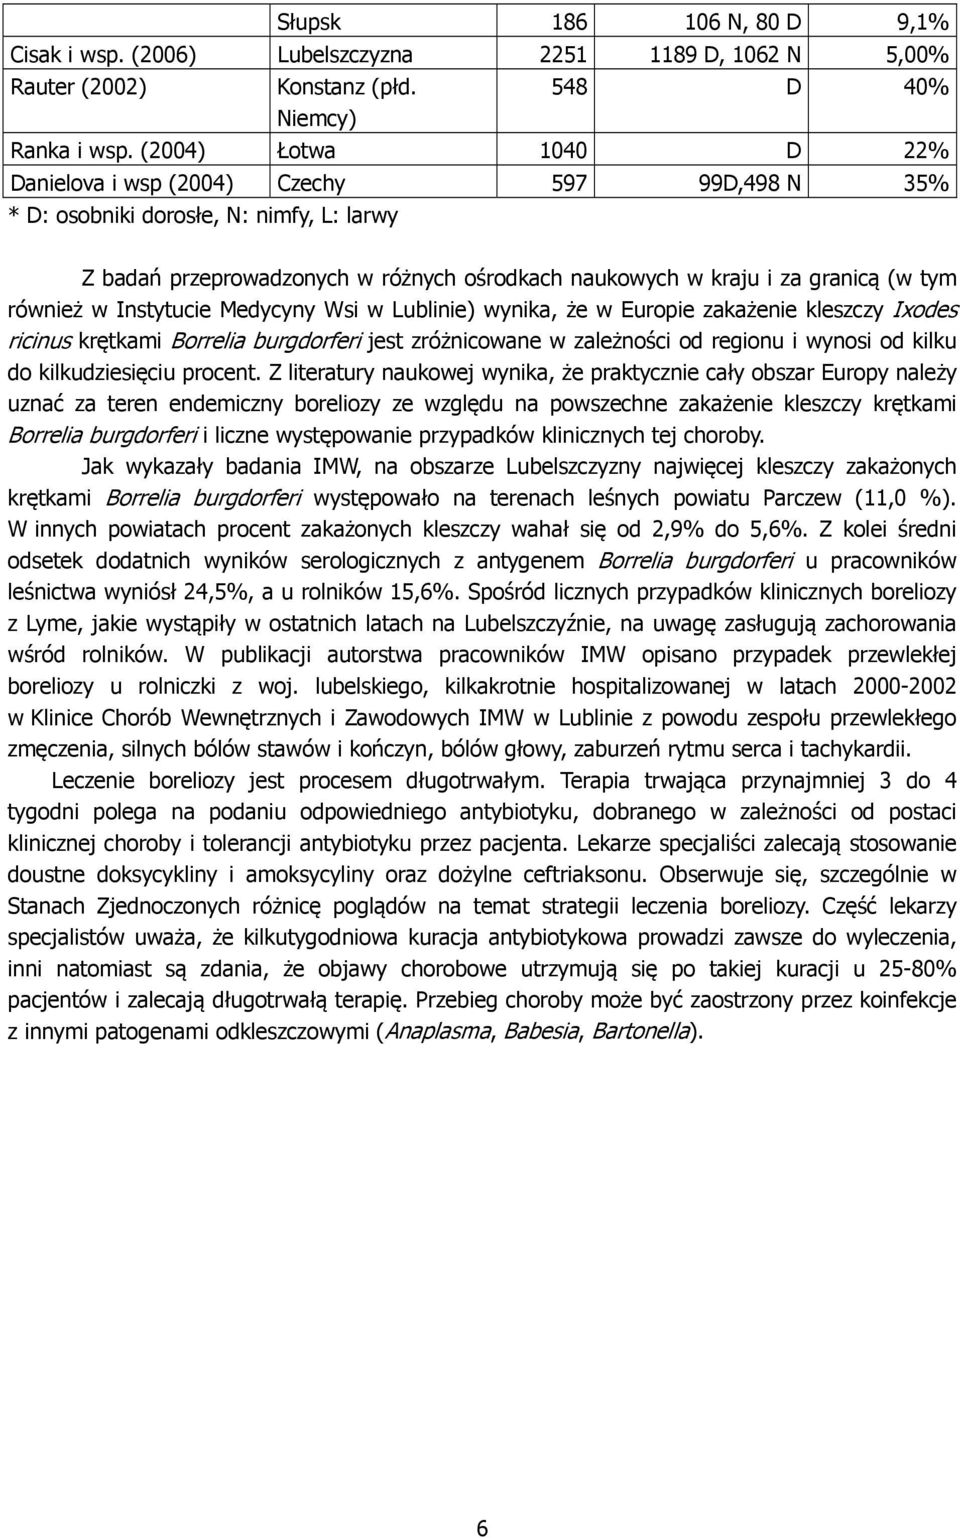 również w Instytucie Medycyny Wsi w Lublinie) wynika, że w Europie zakażenie kleszczy Ixodes ricinus krętkami Borrelia burgdorferi jest zróżnicowane w zależności od regionu i wynosi od kilku do